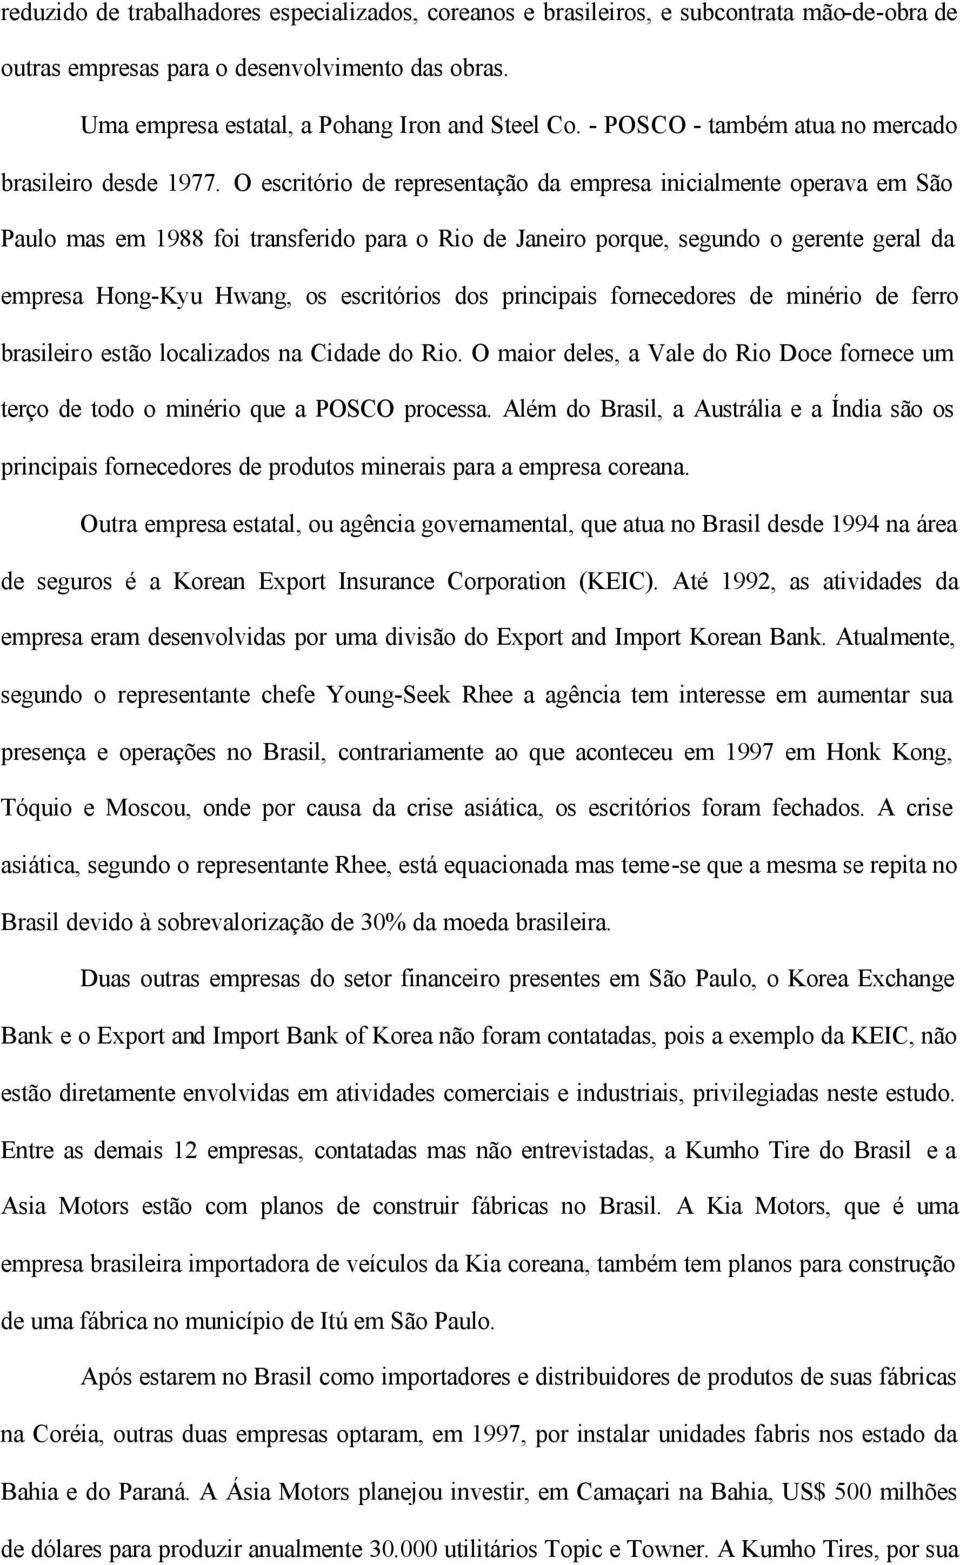 O escritório de representação da empresa inicialmente operava em São Paulo mas em 1988 foi transferido para o Rio de Janeiro porque, segundo o gerente geral da empresa Hong-Kyu Hwang, os escritórios